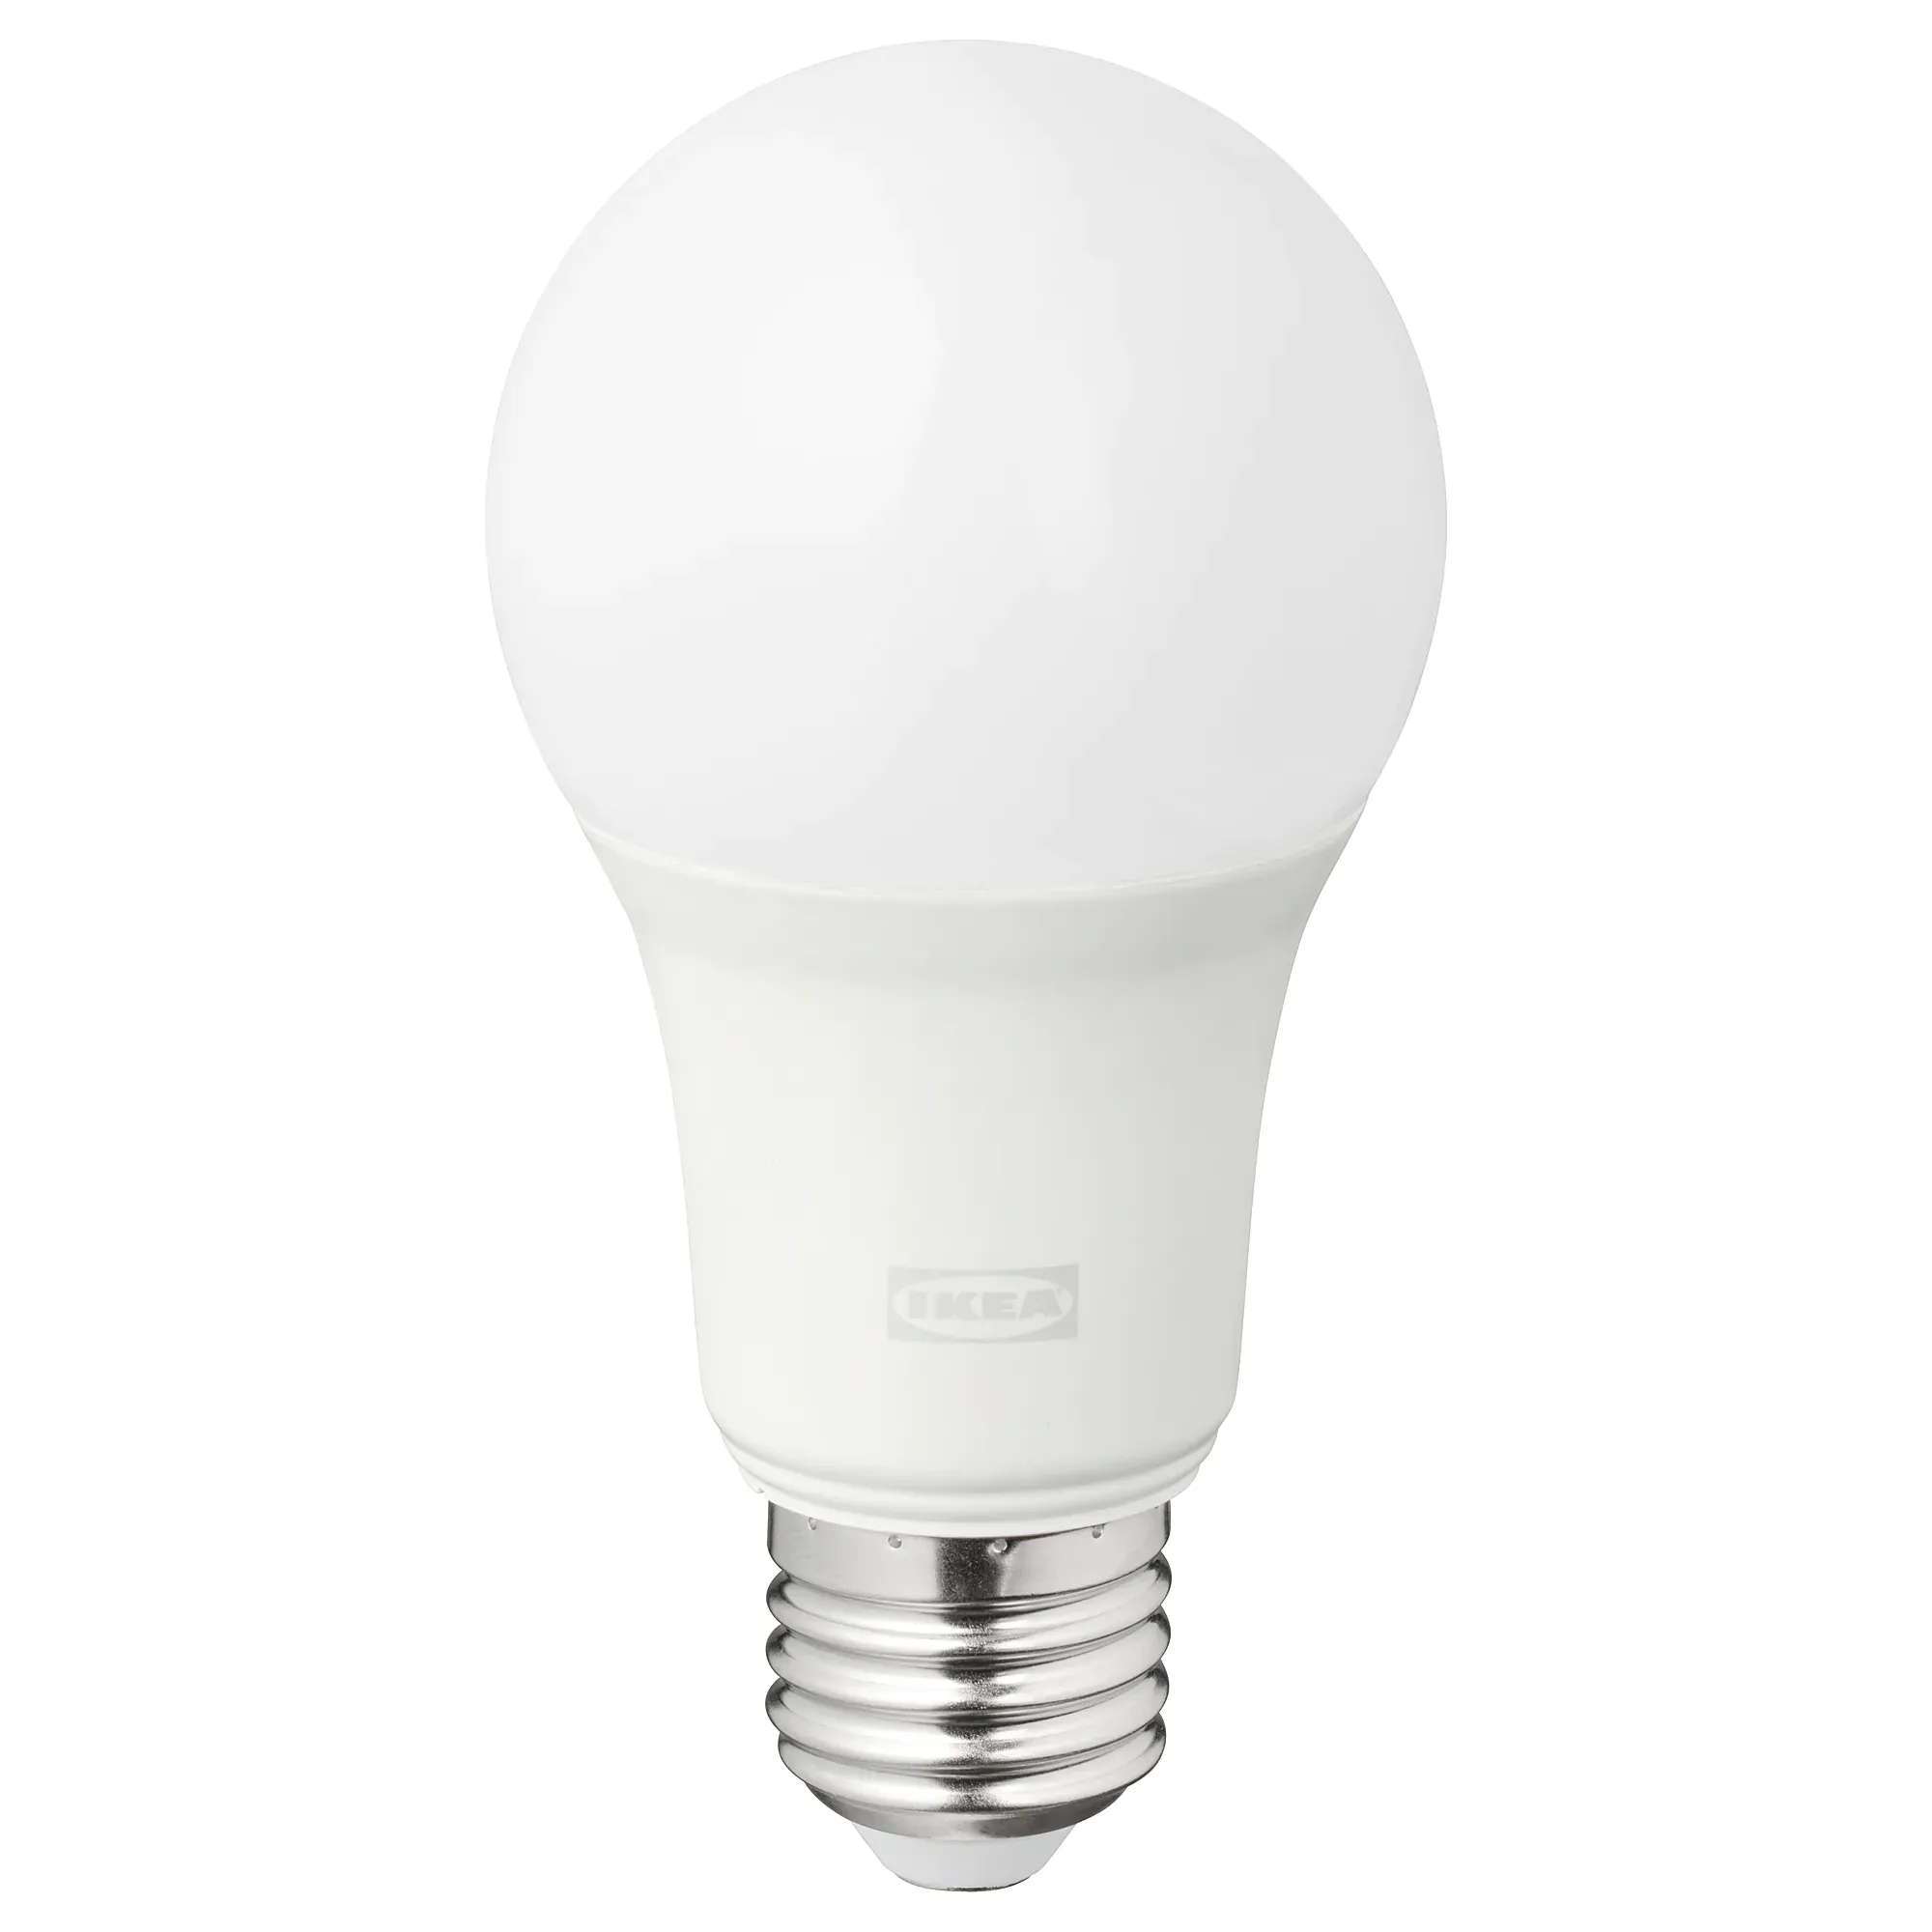 Tradfri bulb E26/E27 CWS 800/806 lumen, dimmable, color, opal white